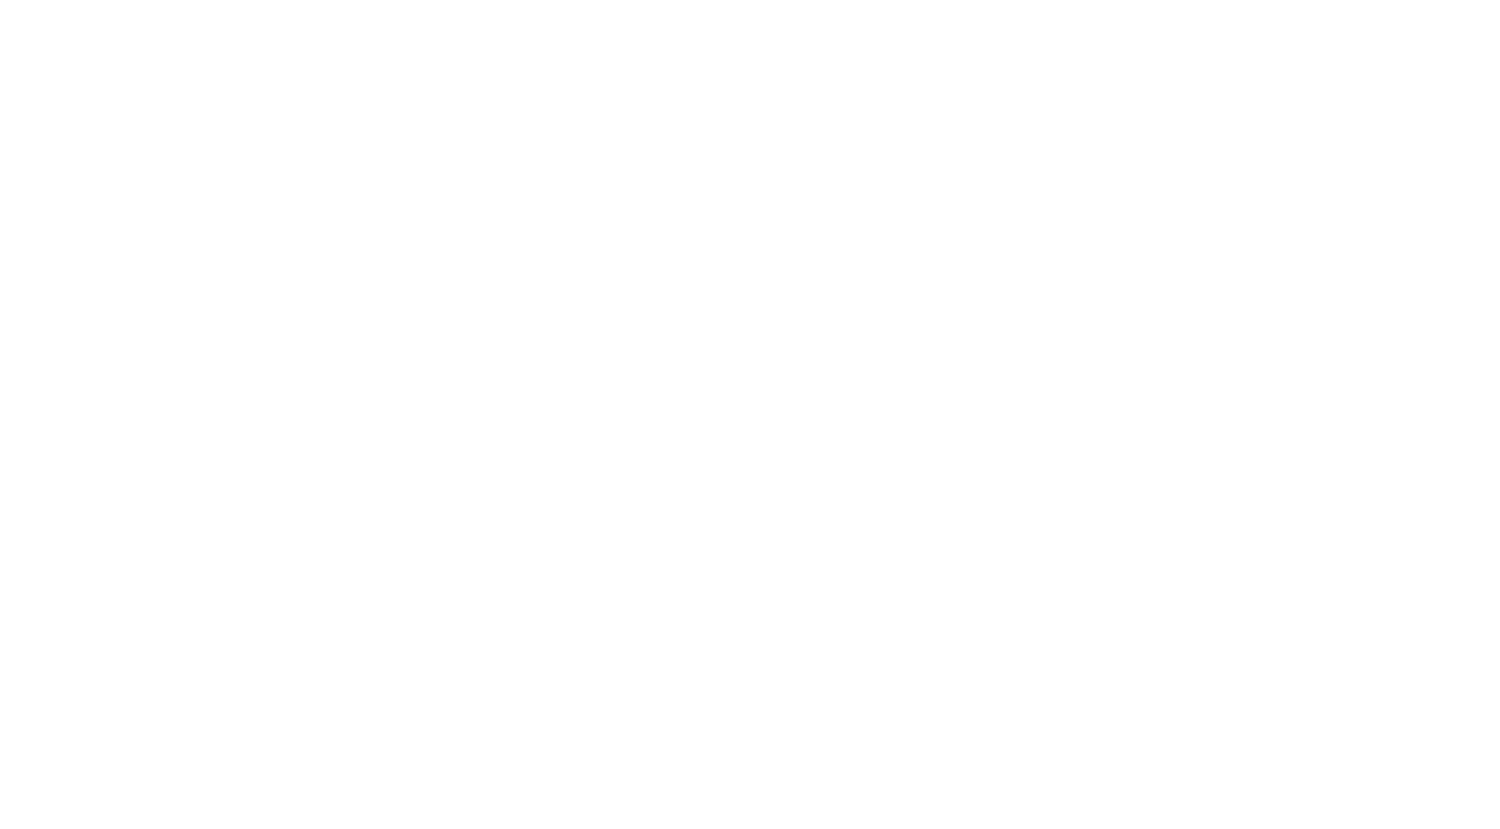 Enjoy Detroit 